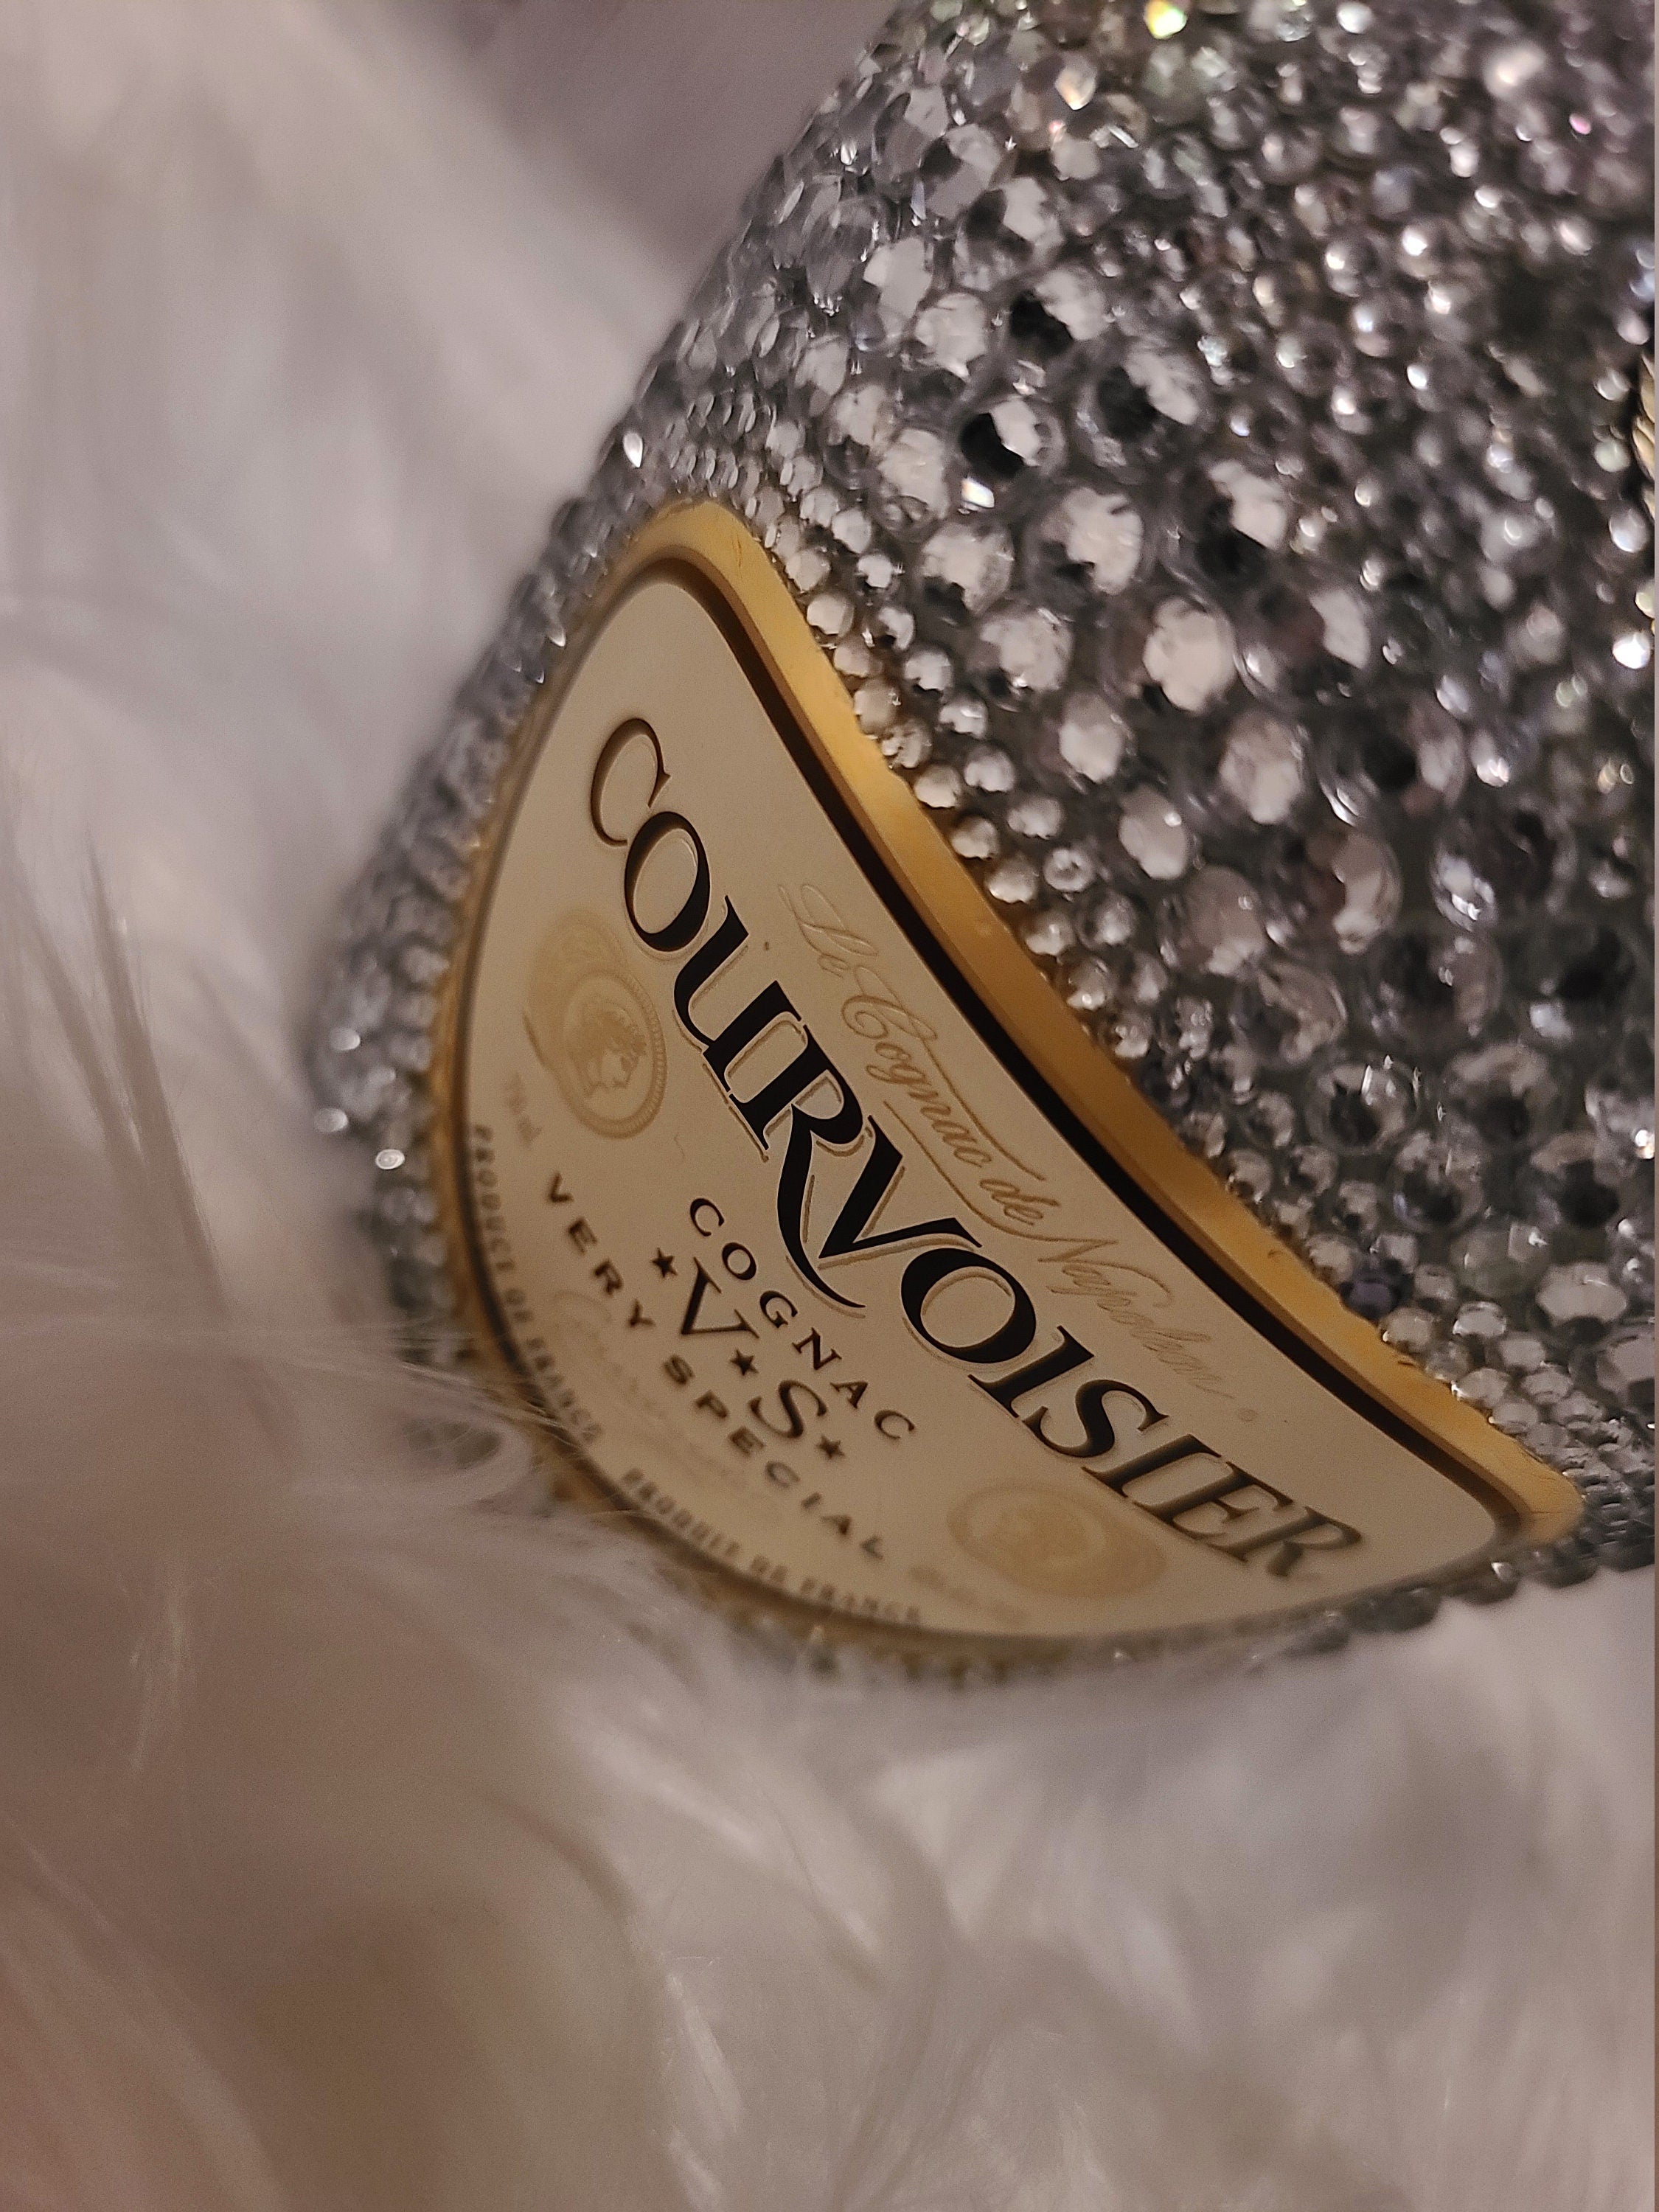 Courvoisier Cognac Bedazzled Bling Liquor Bottle - Party Decor - Blinged Out